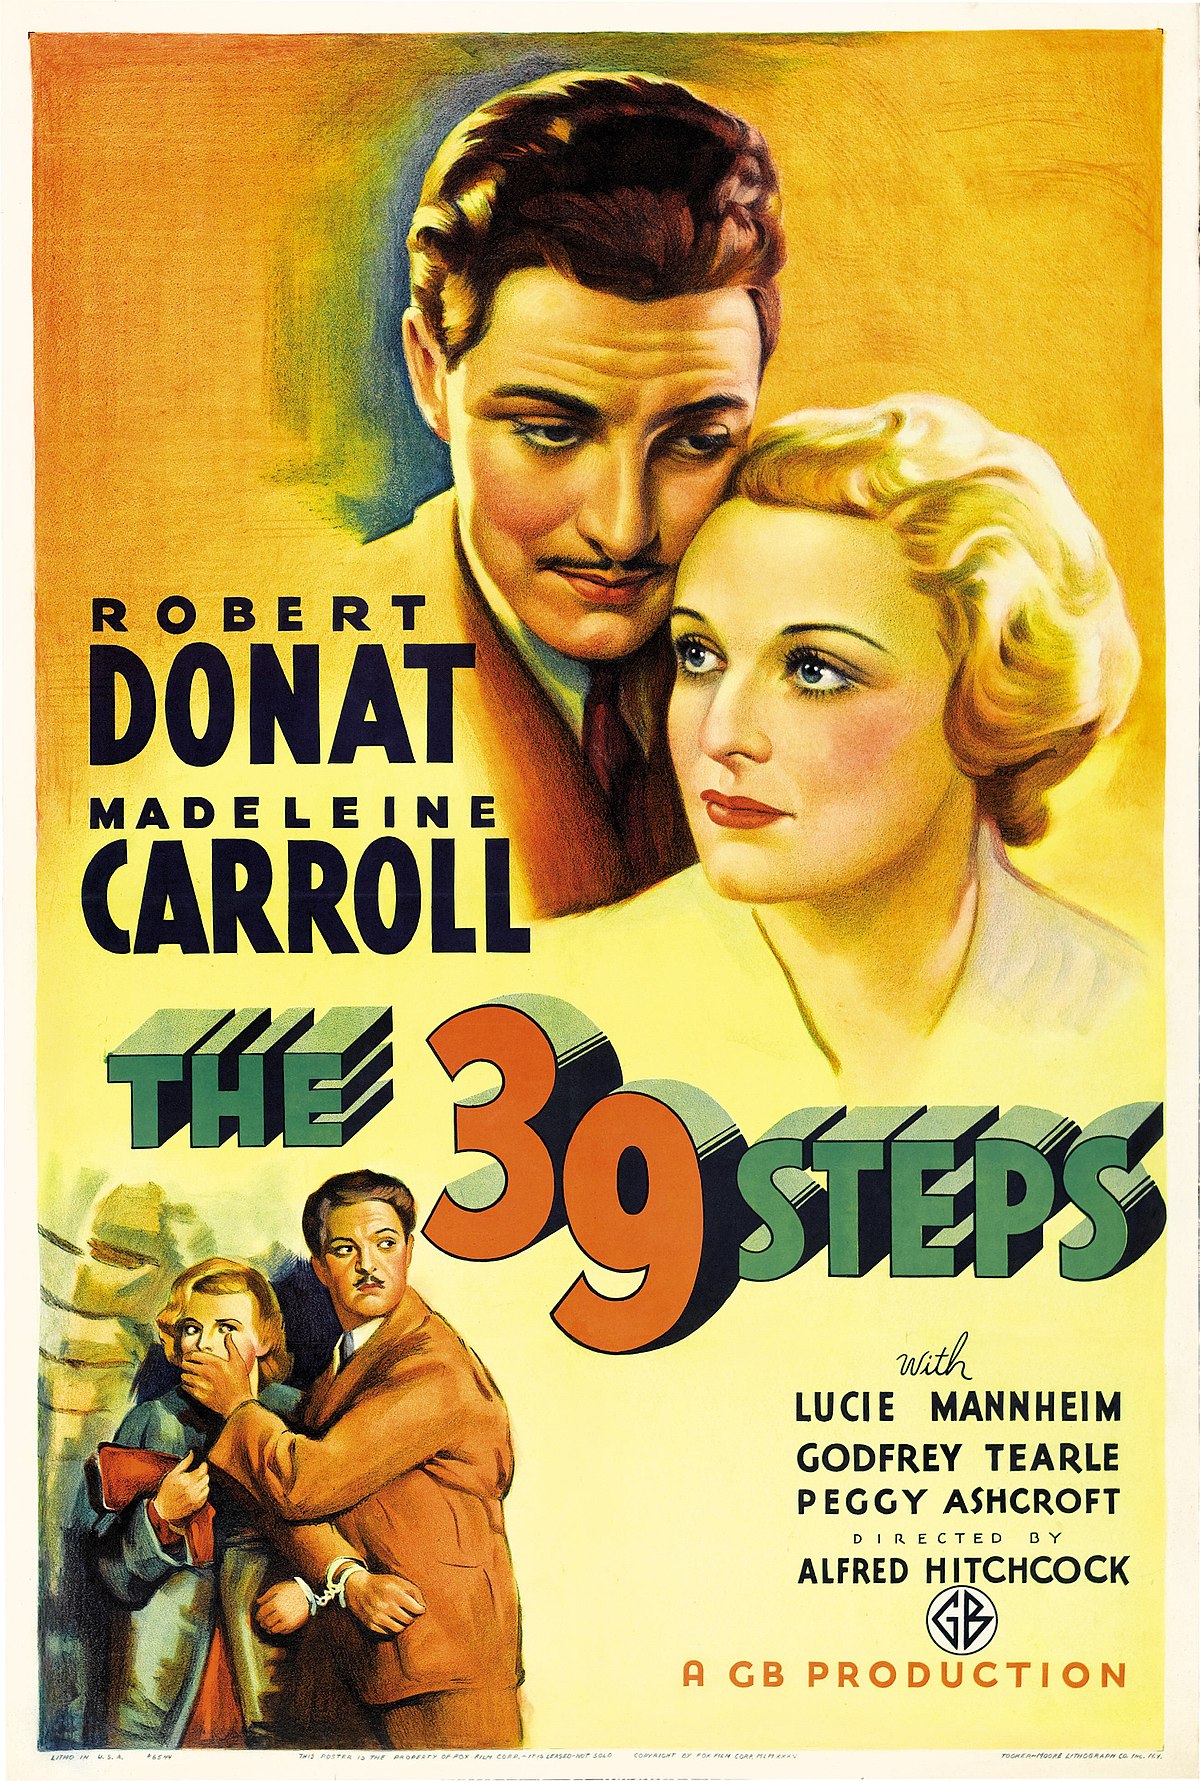 47 HQ Pictures 39 Steps Movie Hitchcock / The 39 Steps (película de 1935) - Wikipedia, la ...